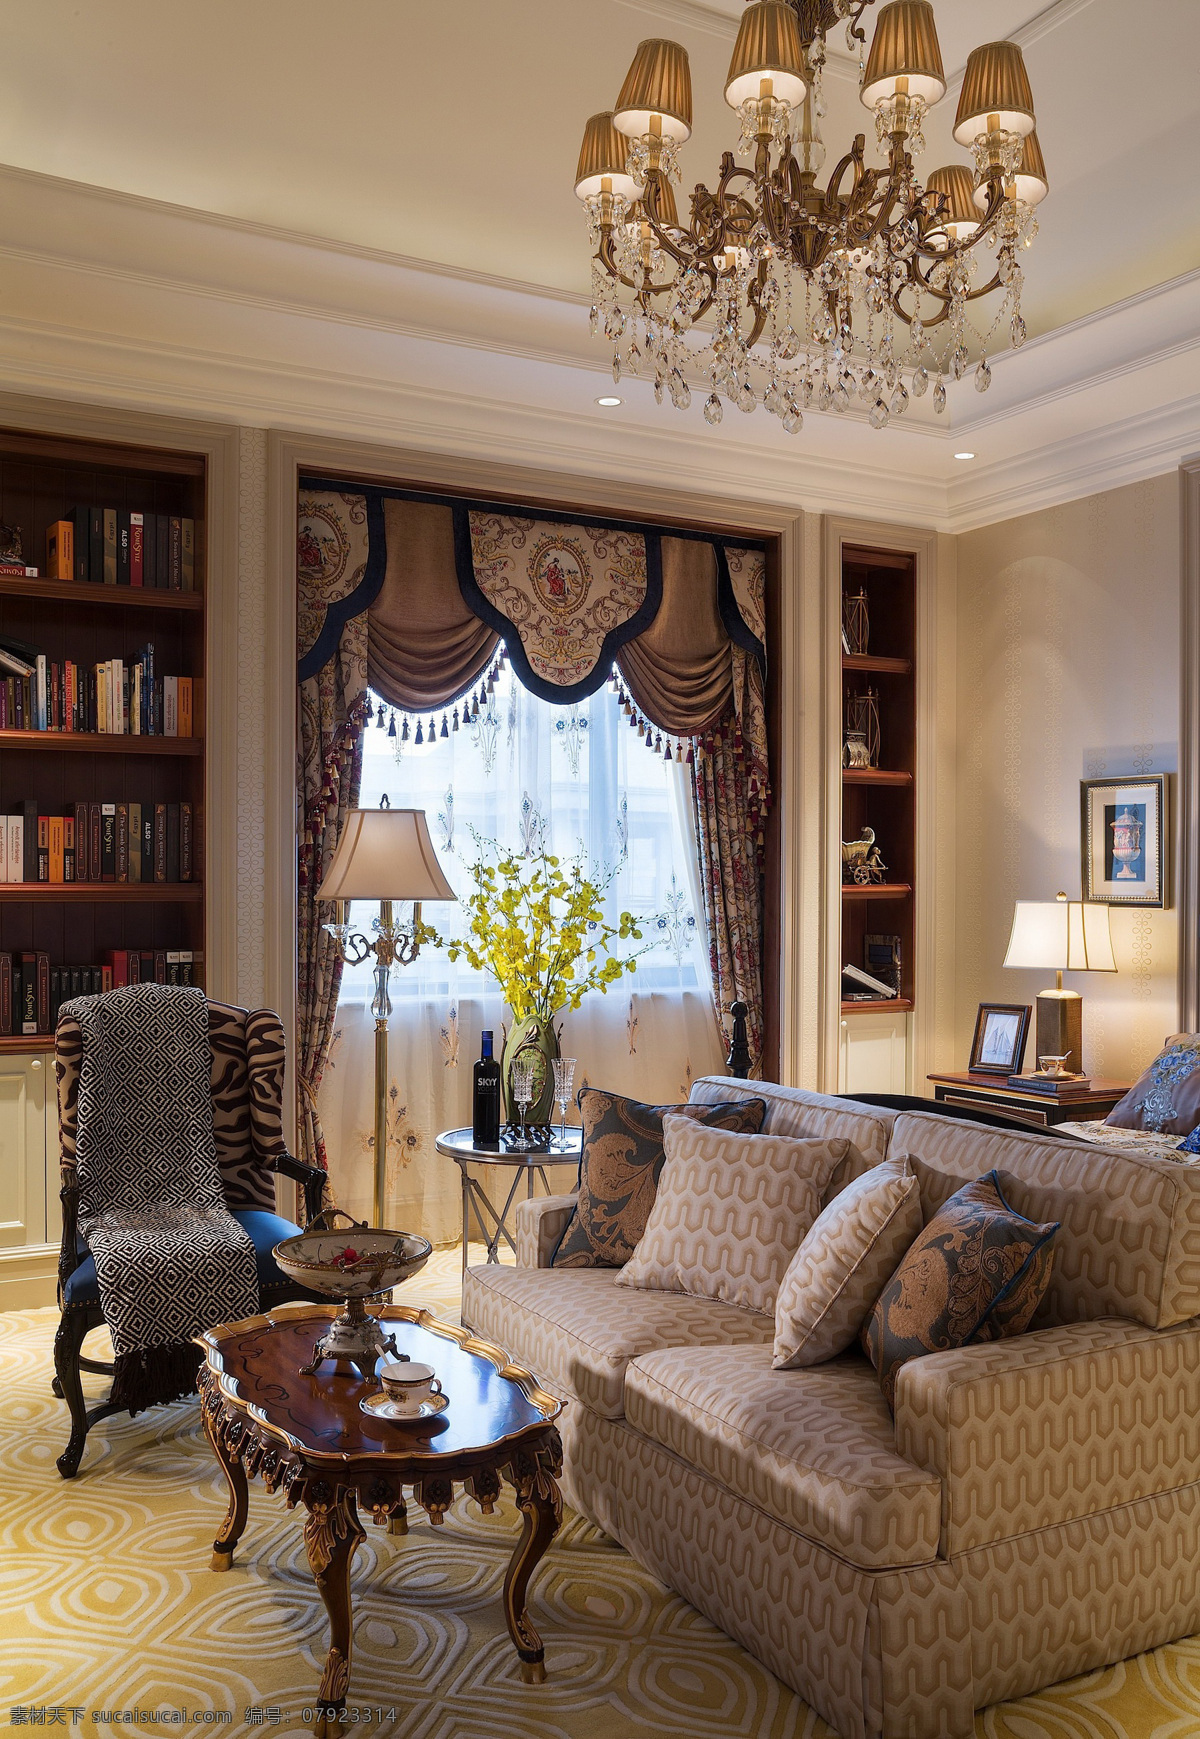 欧式 轻 奢 客厅 铜 金色 吊灯 室内装修 效果图 客厅装修 木制茶几 浅色地板 浅色沙发